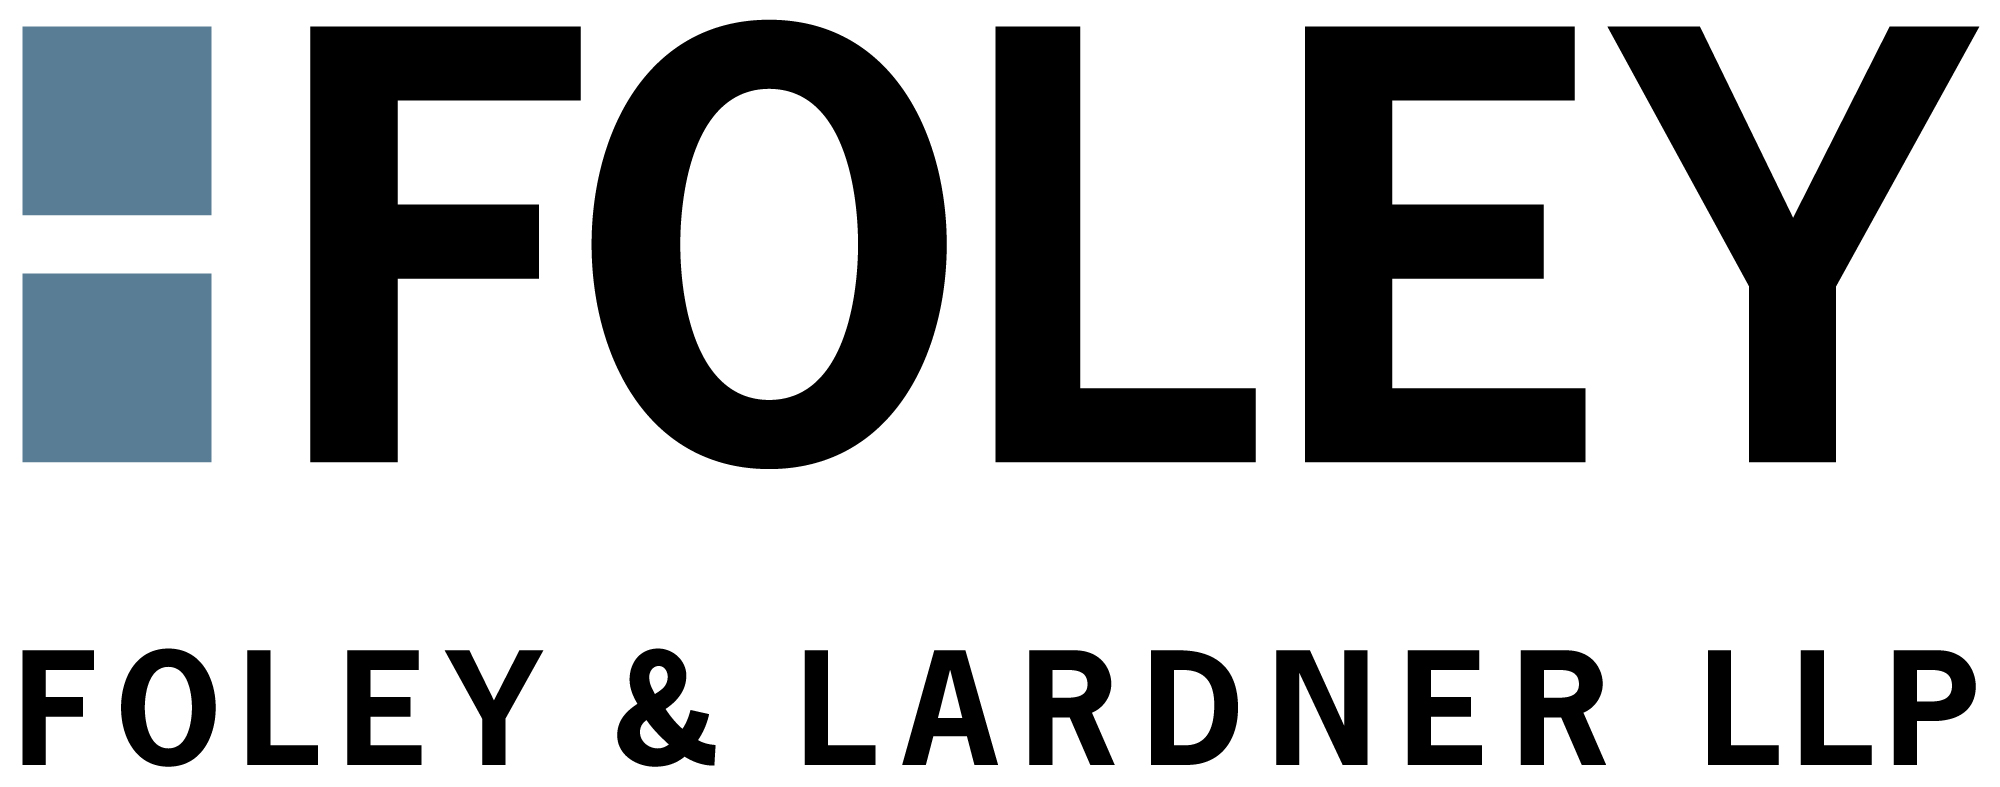 02.1_Emerald_Foley Logo